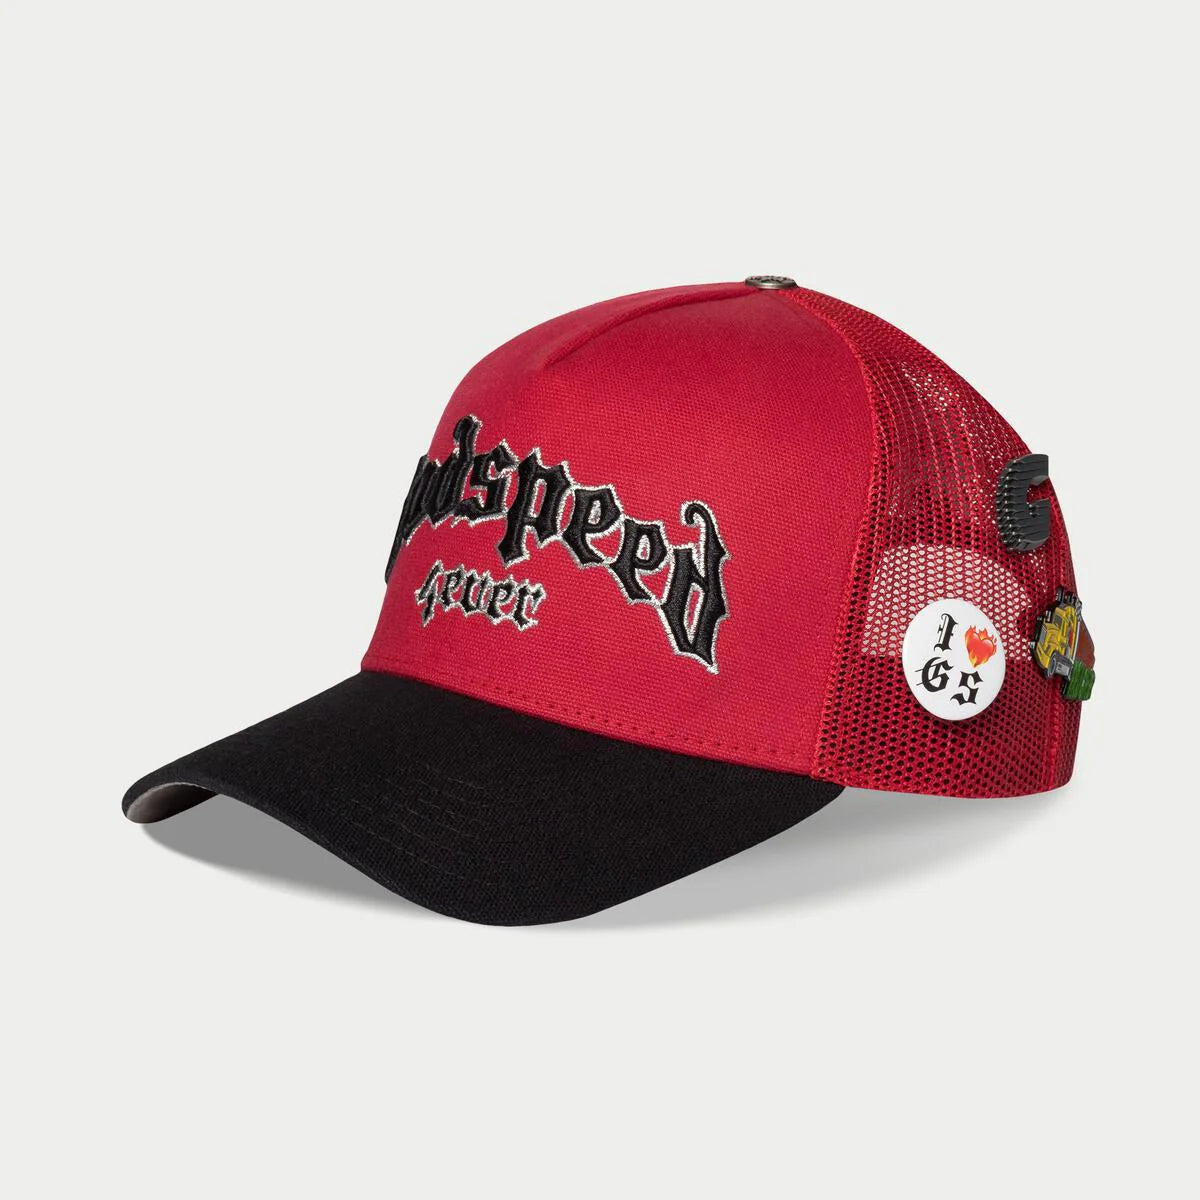 GODSPEED Forever Trucker Hat (Red/ Black)